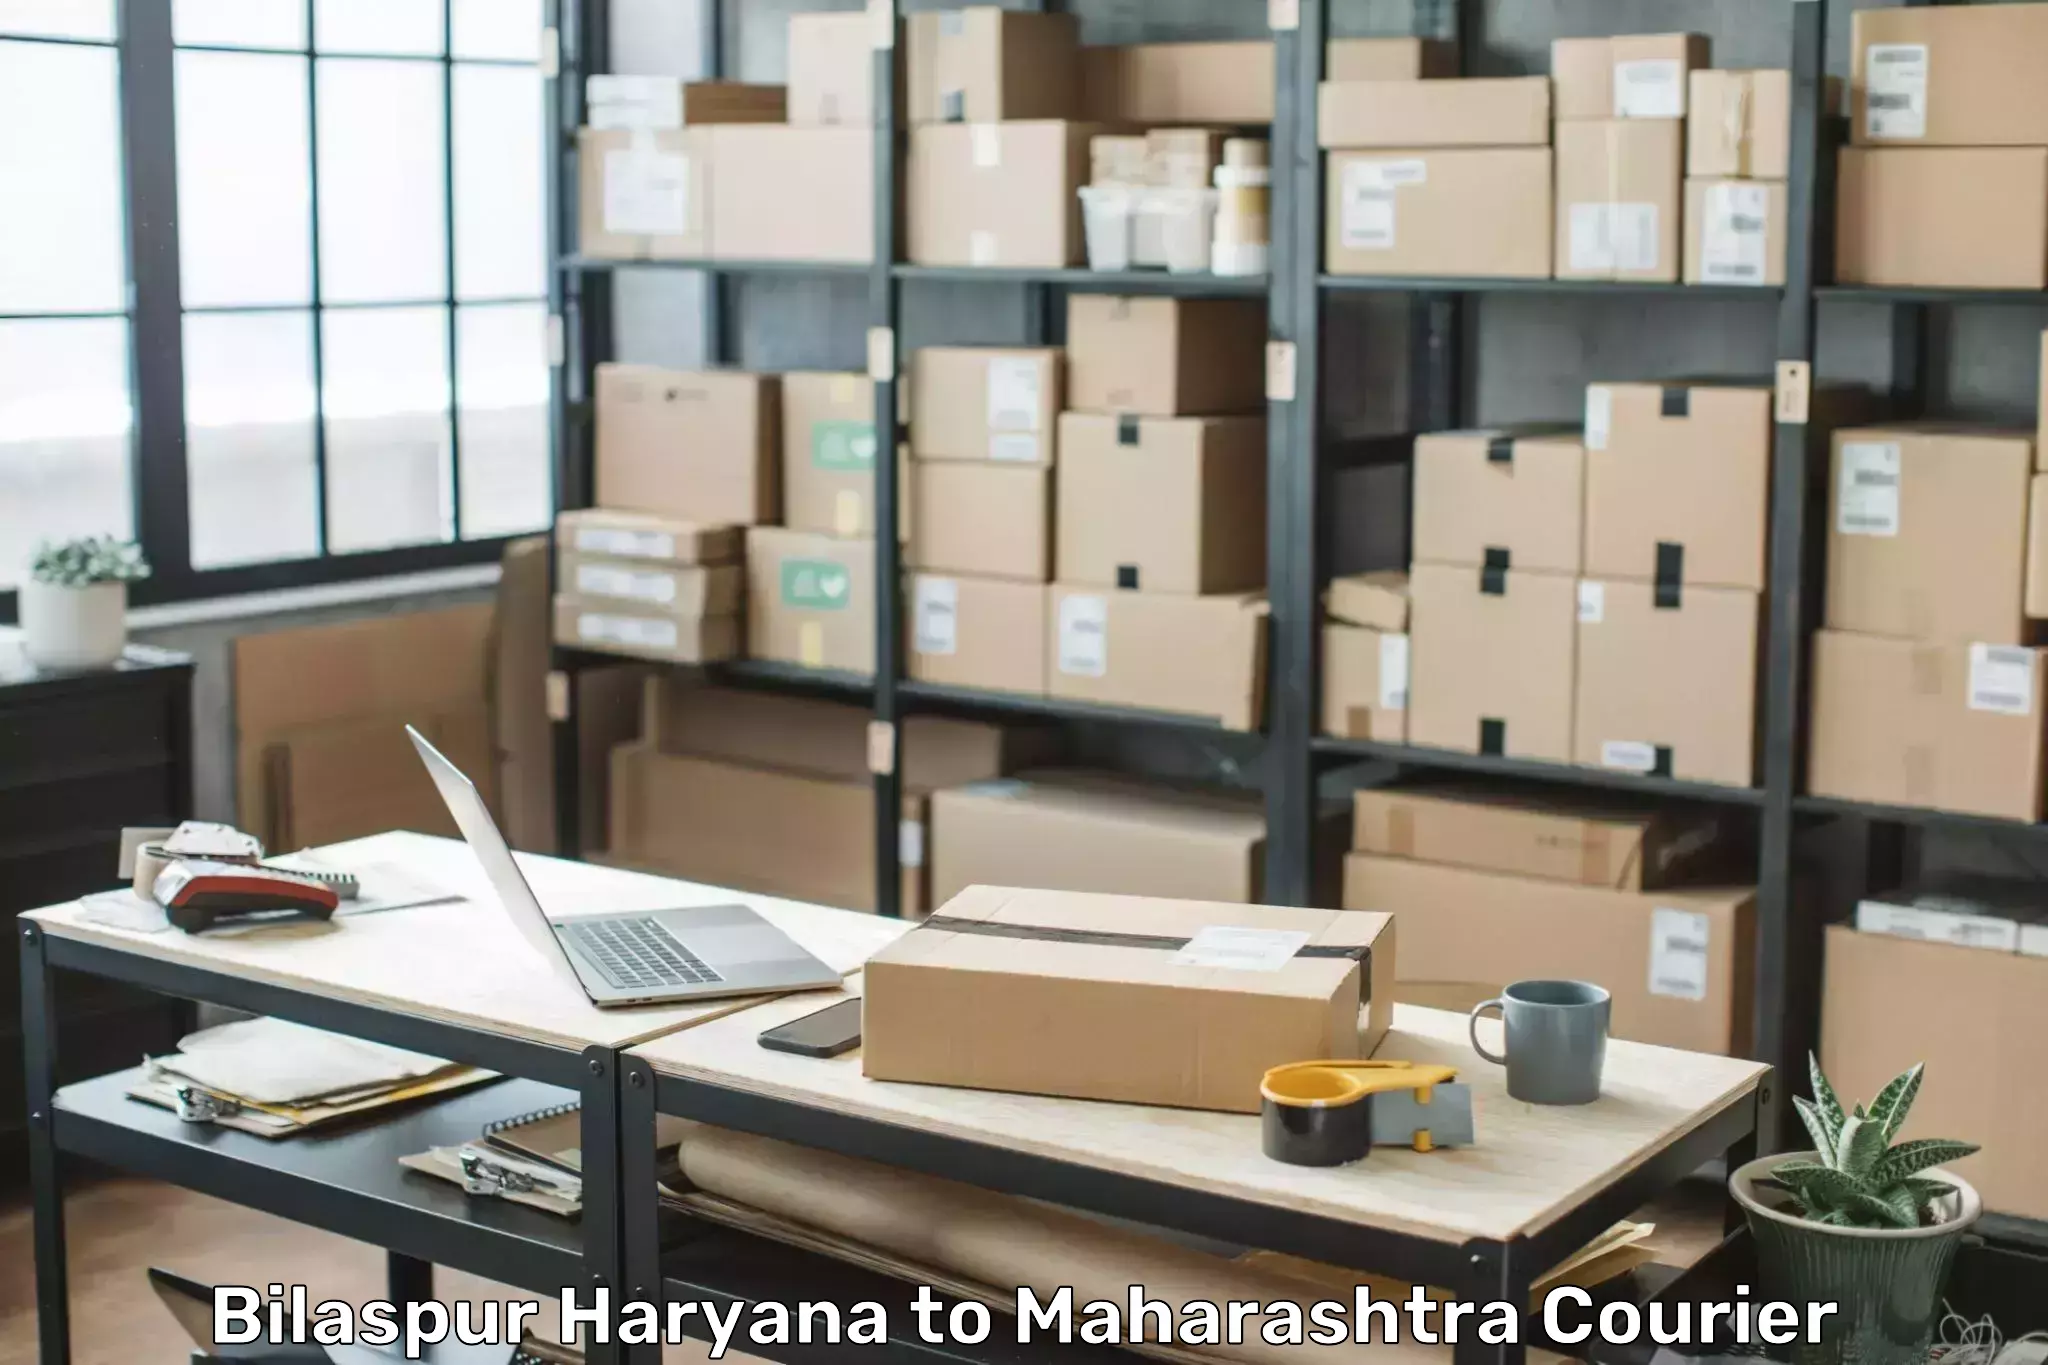 Baggage shipping service Bilaspur Haryana to Andheri